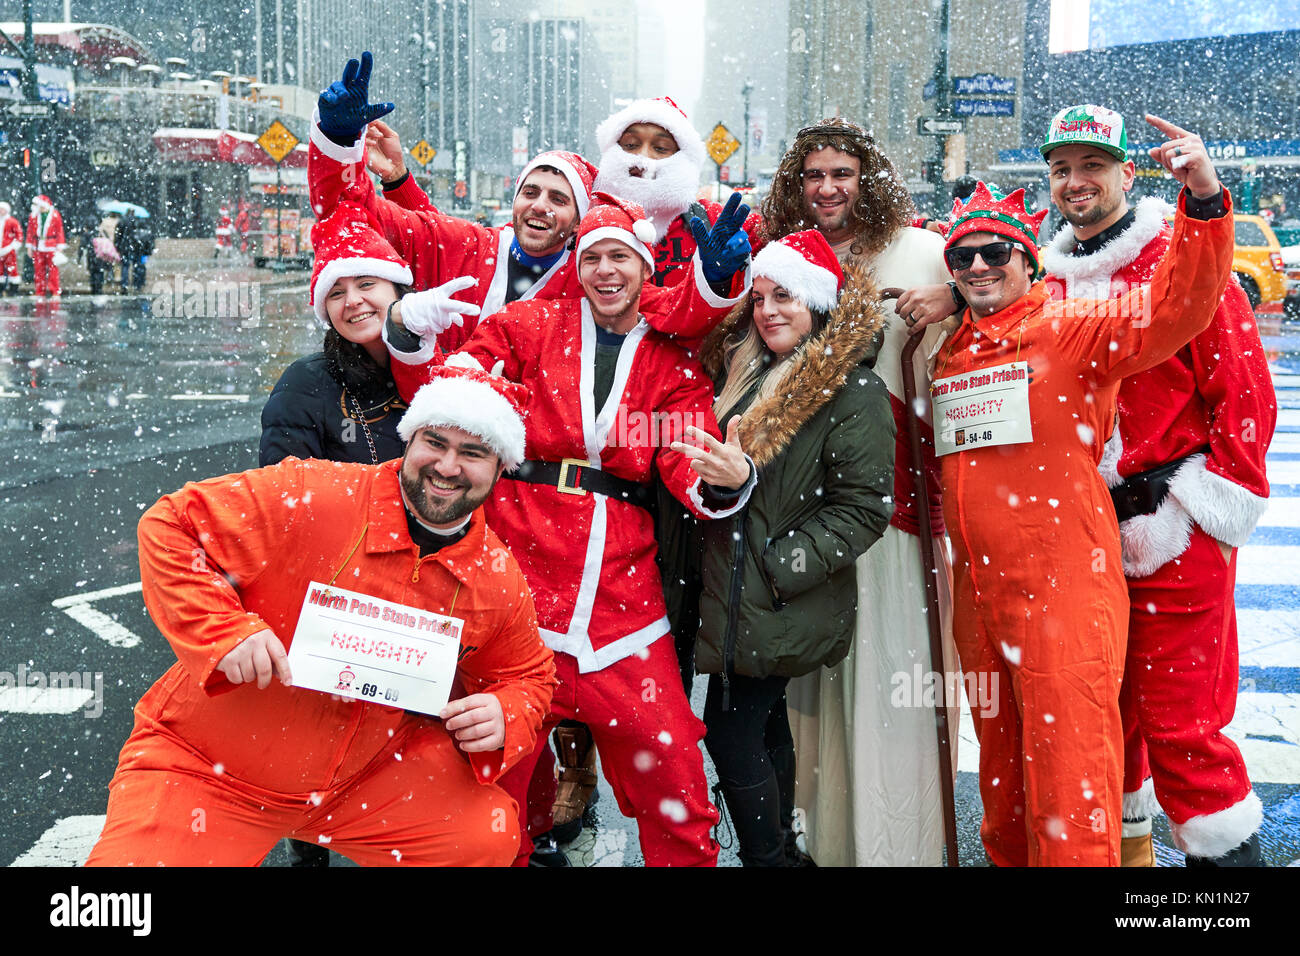 New York, Stati Uniti d'America, 9 Dic 2017. Persone che indossano il Natale-costumi correlati pongono sotto una tempesta di neve in una festosa 'Santacon' folla raccolta. Foto di Enrique Shore/Alamy Live News Foto Stock